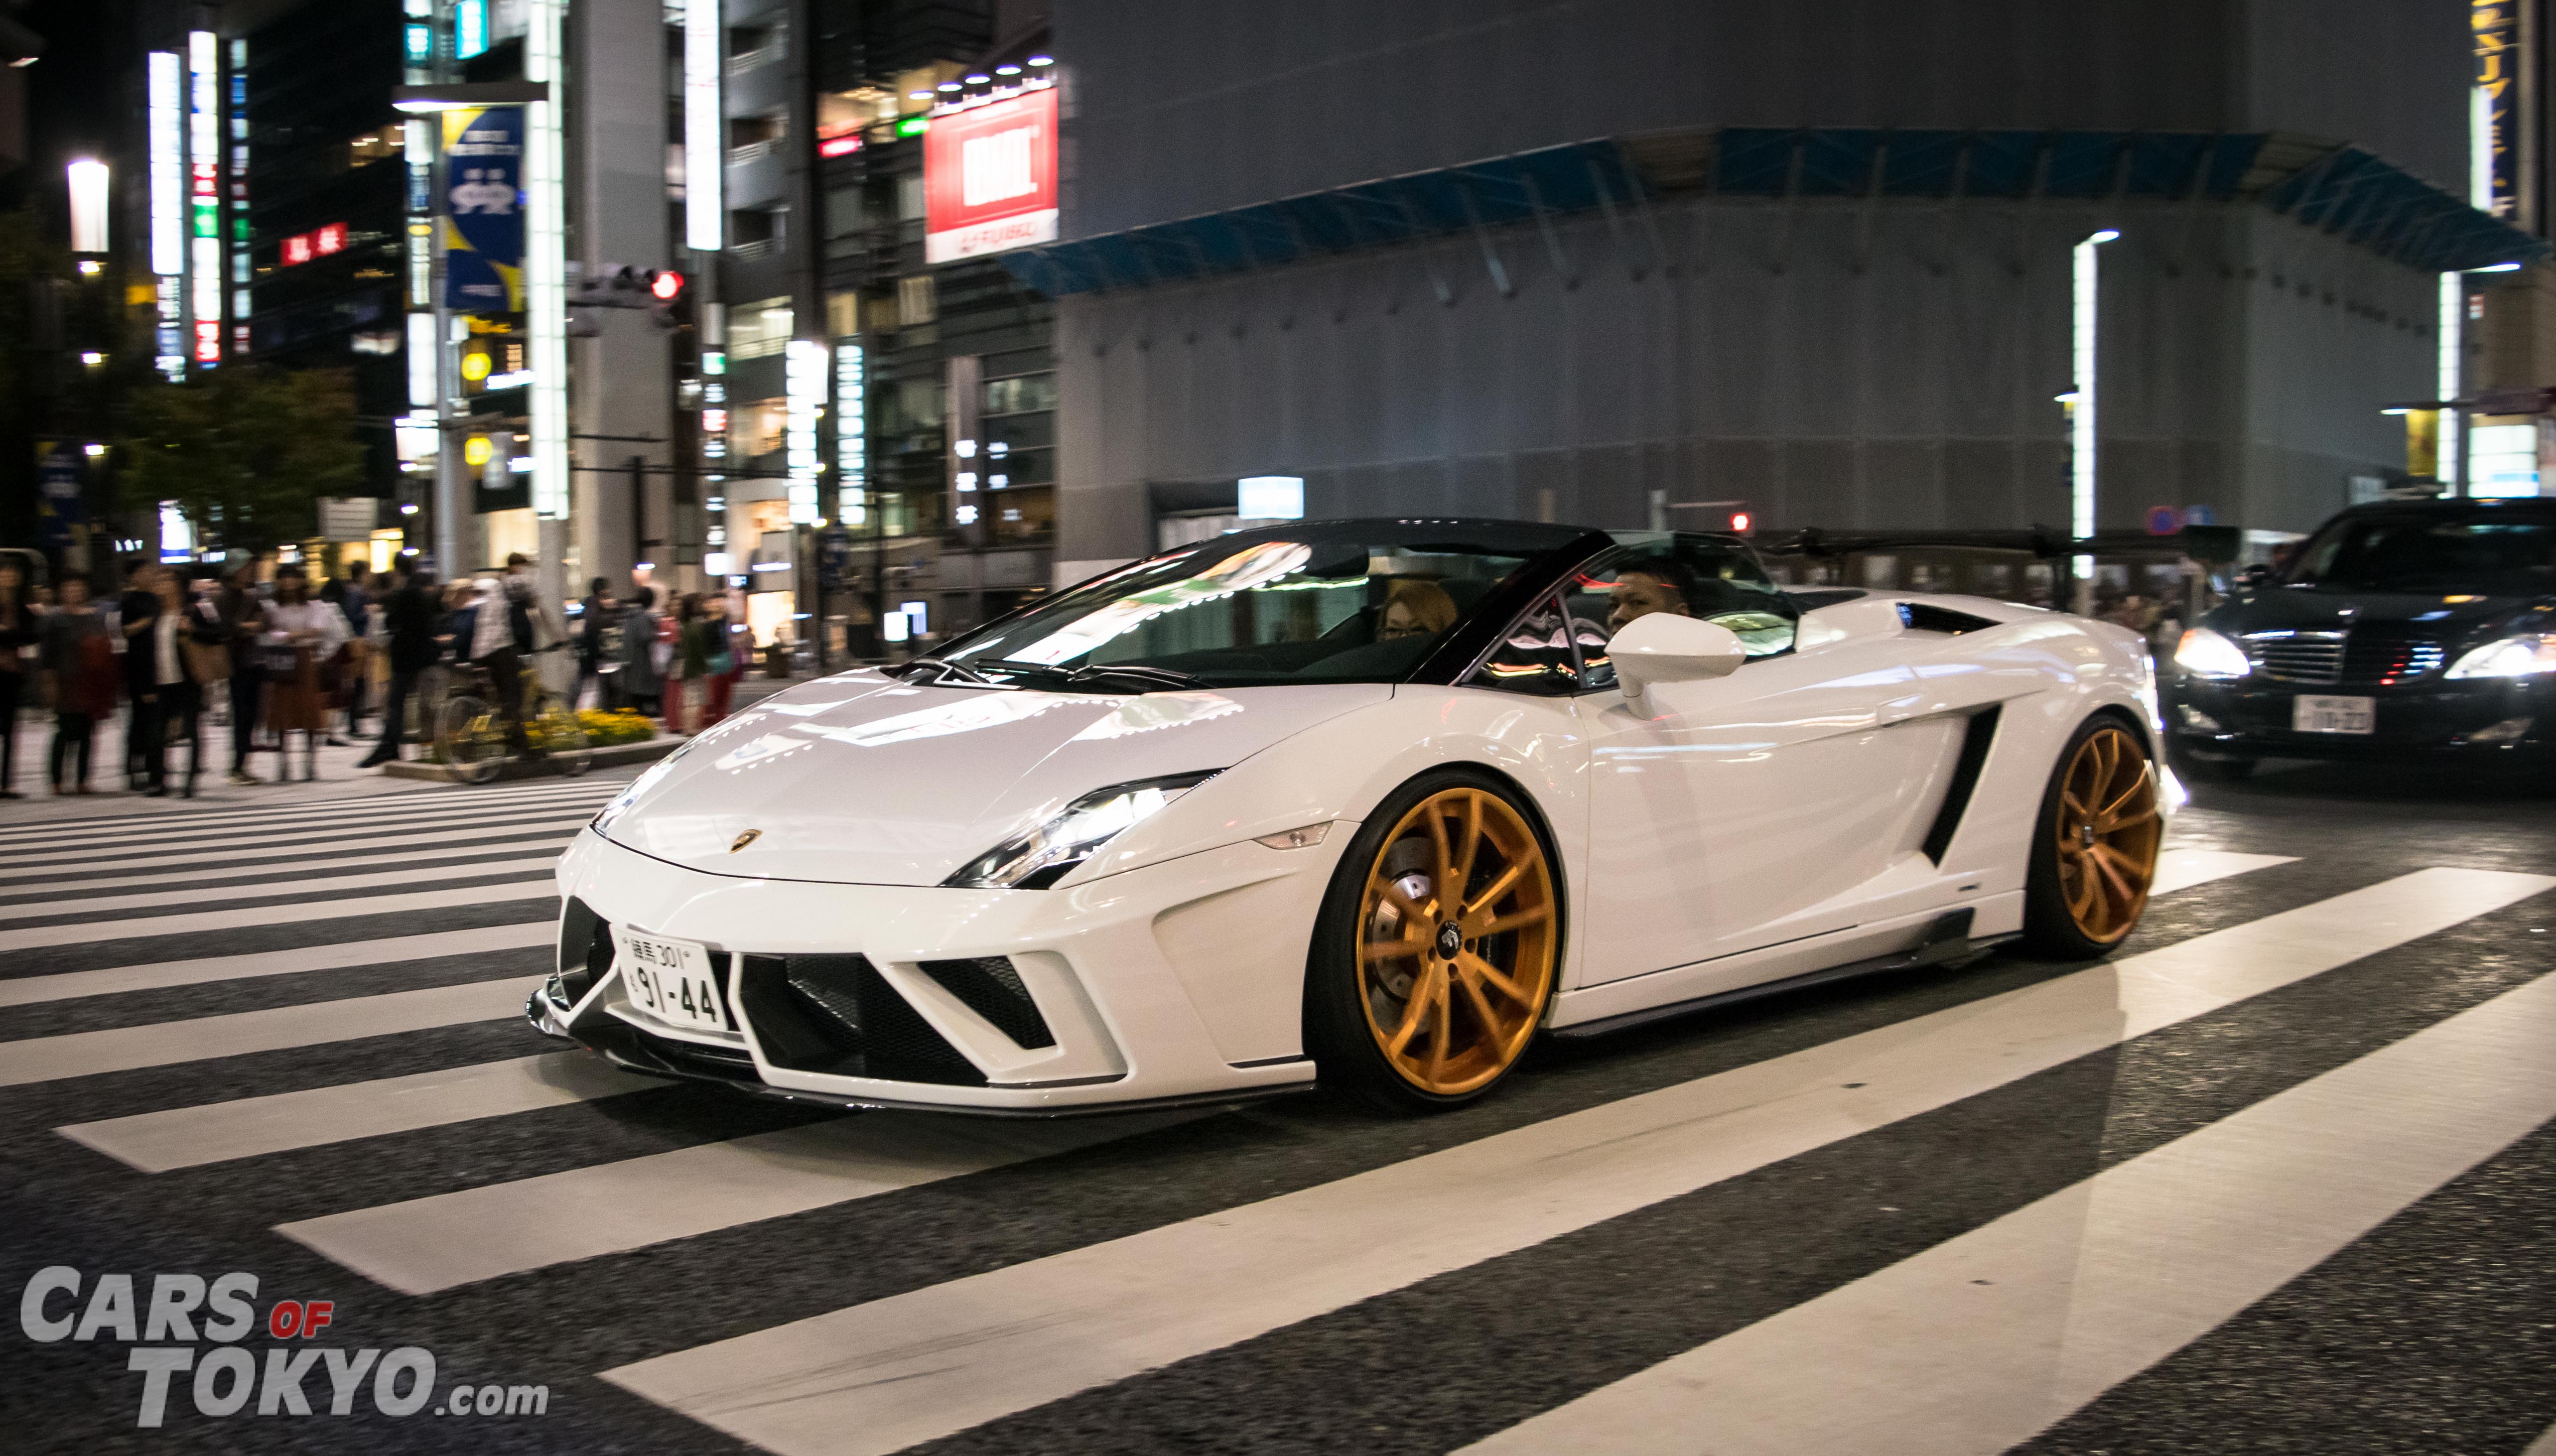 Cars of Tokyo Ginza Lamborghini Gallardo Autoveloce SVR